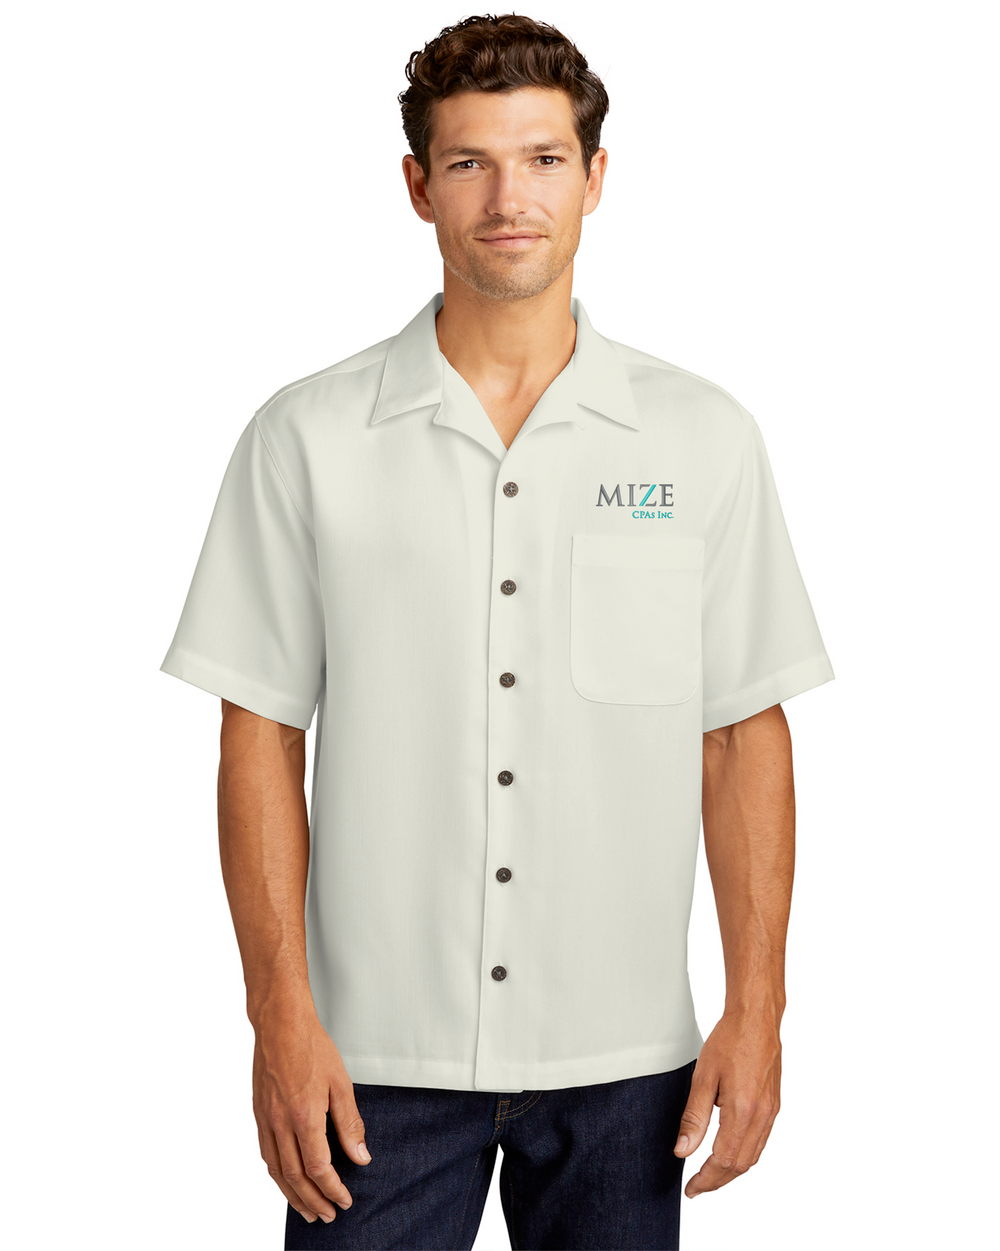 Mize CPAs Inc. - Port Authority Easy Care Camp Shirt - S535